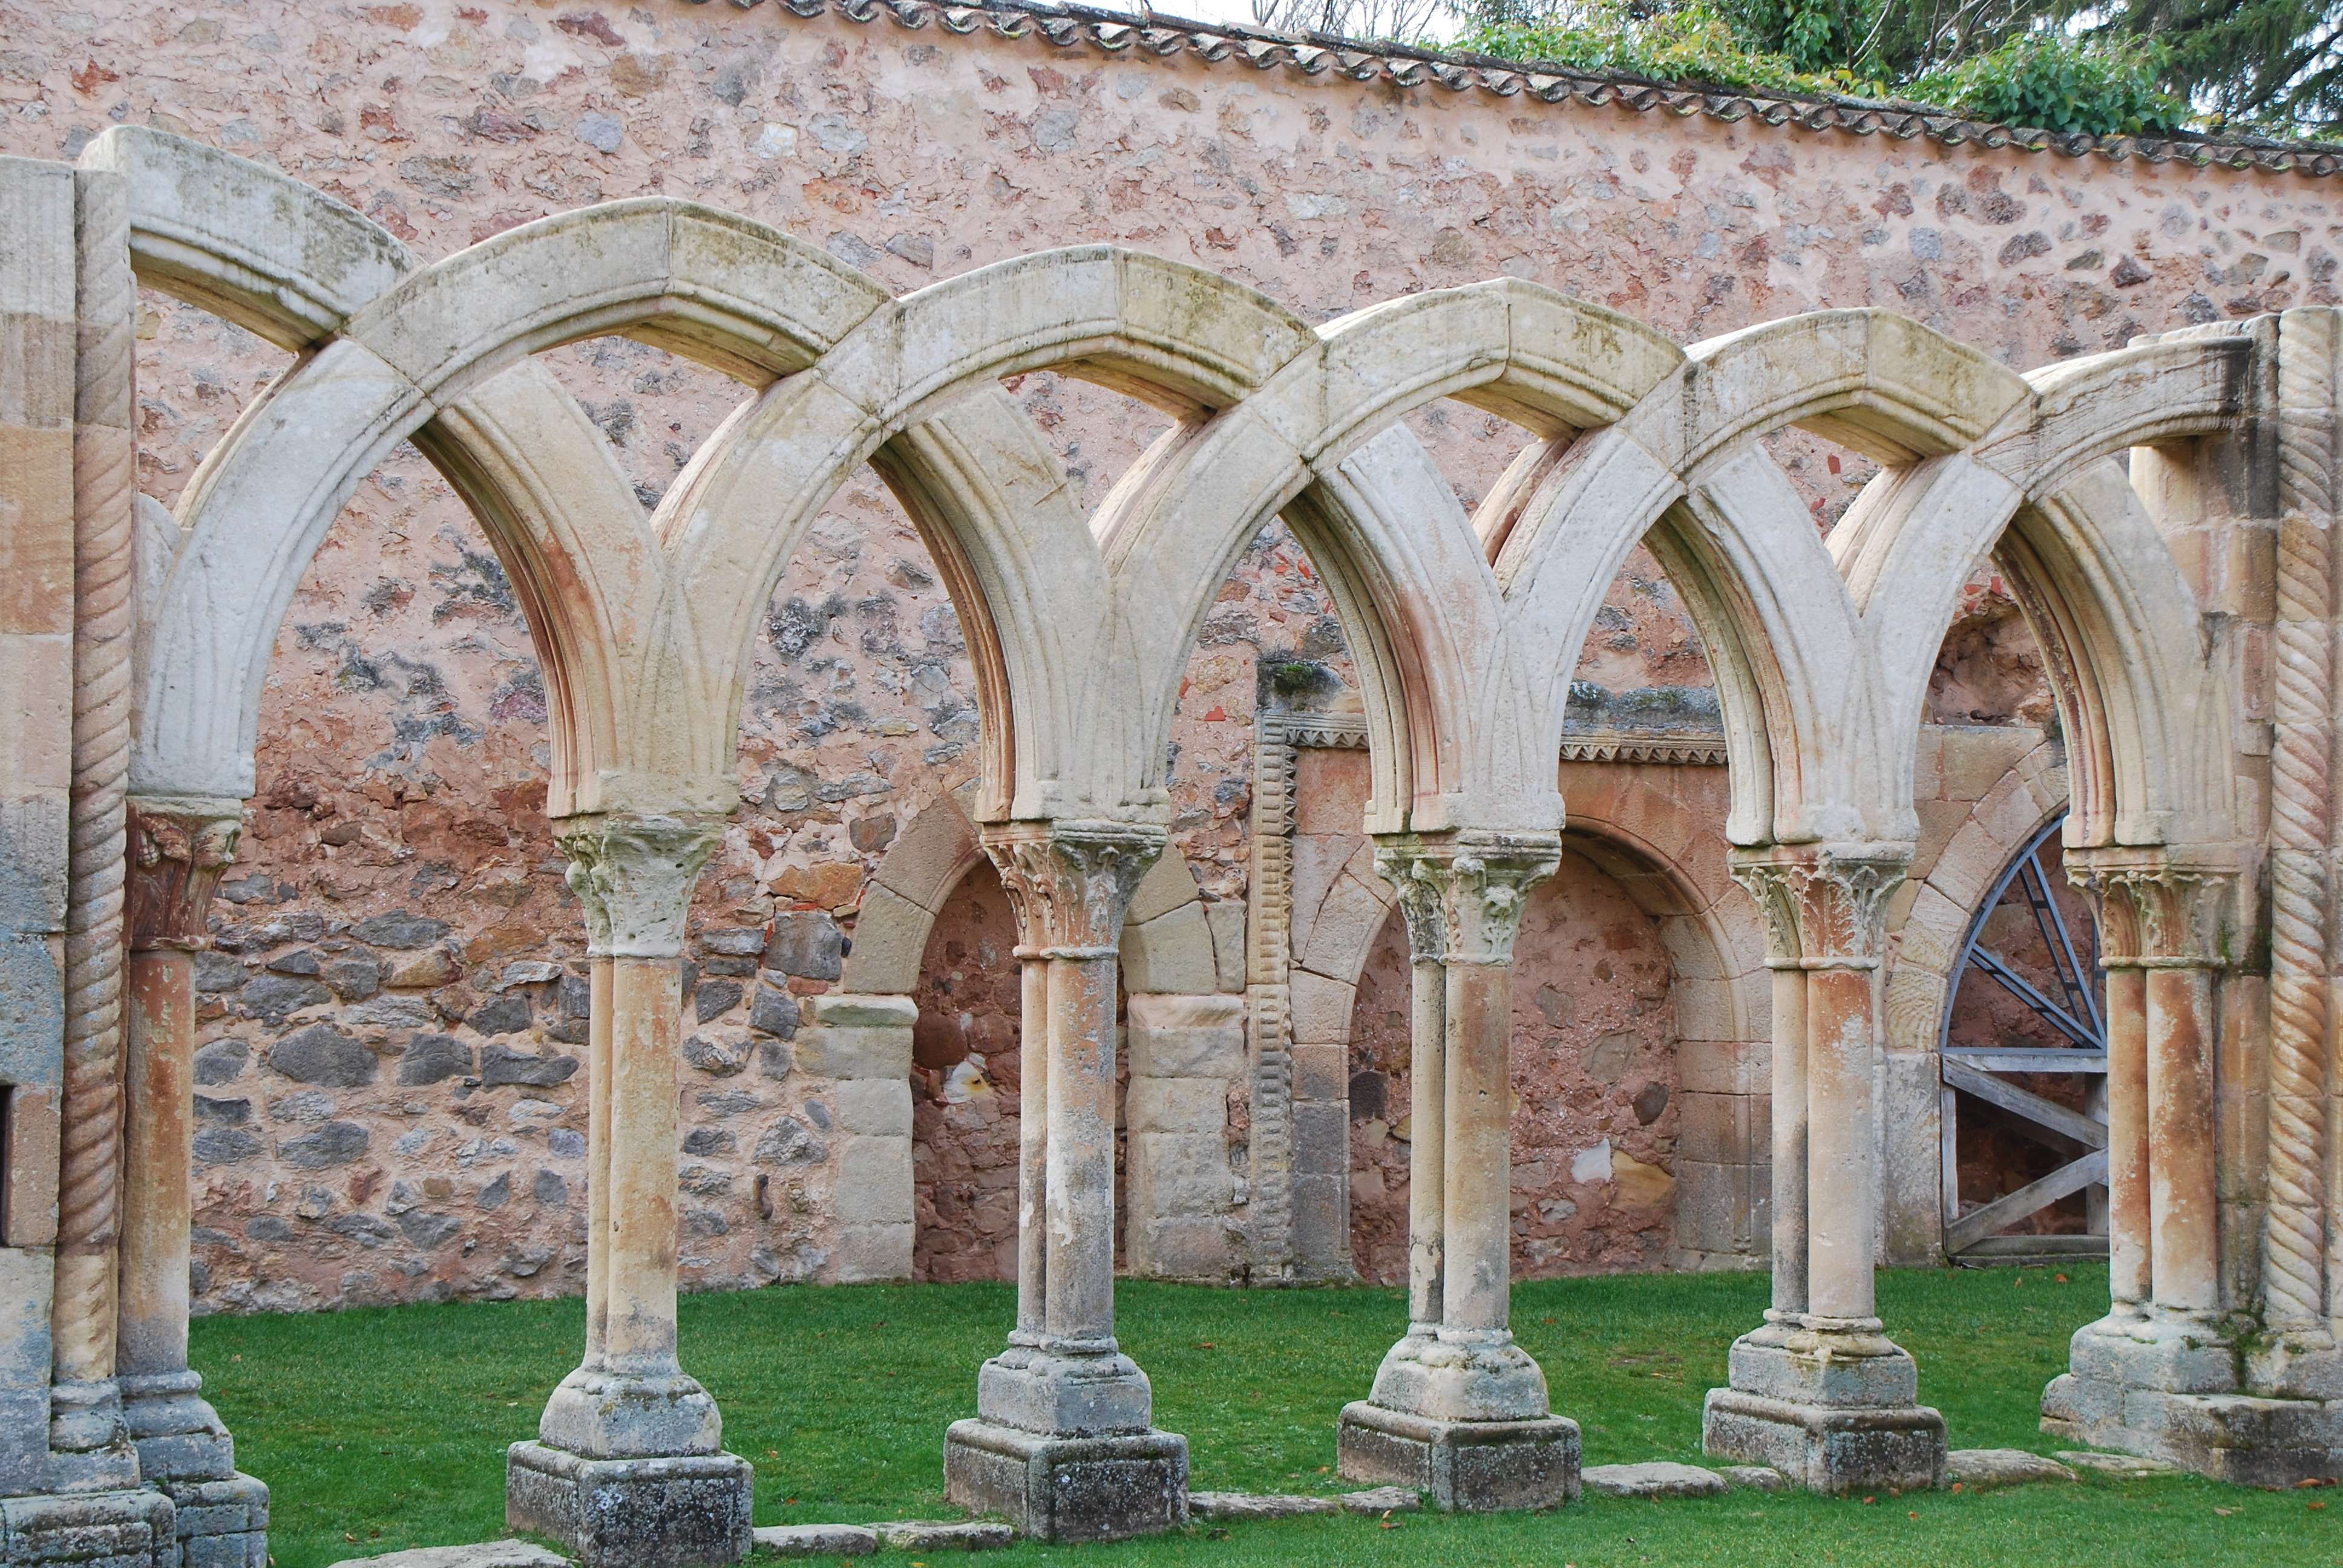 Monasterio de San Juan de Duero. Un enigma - Blogs of Spain - Monasterio de San Juan de Duero (10)